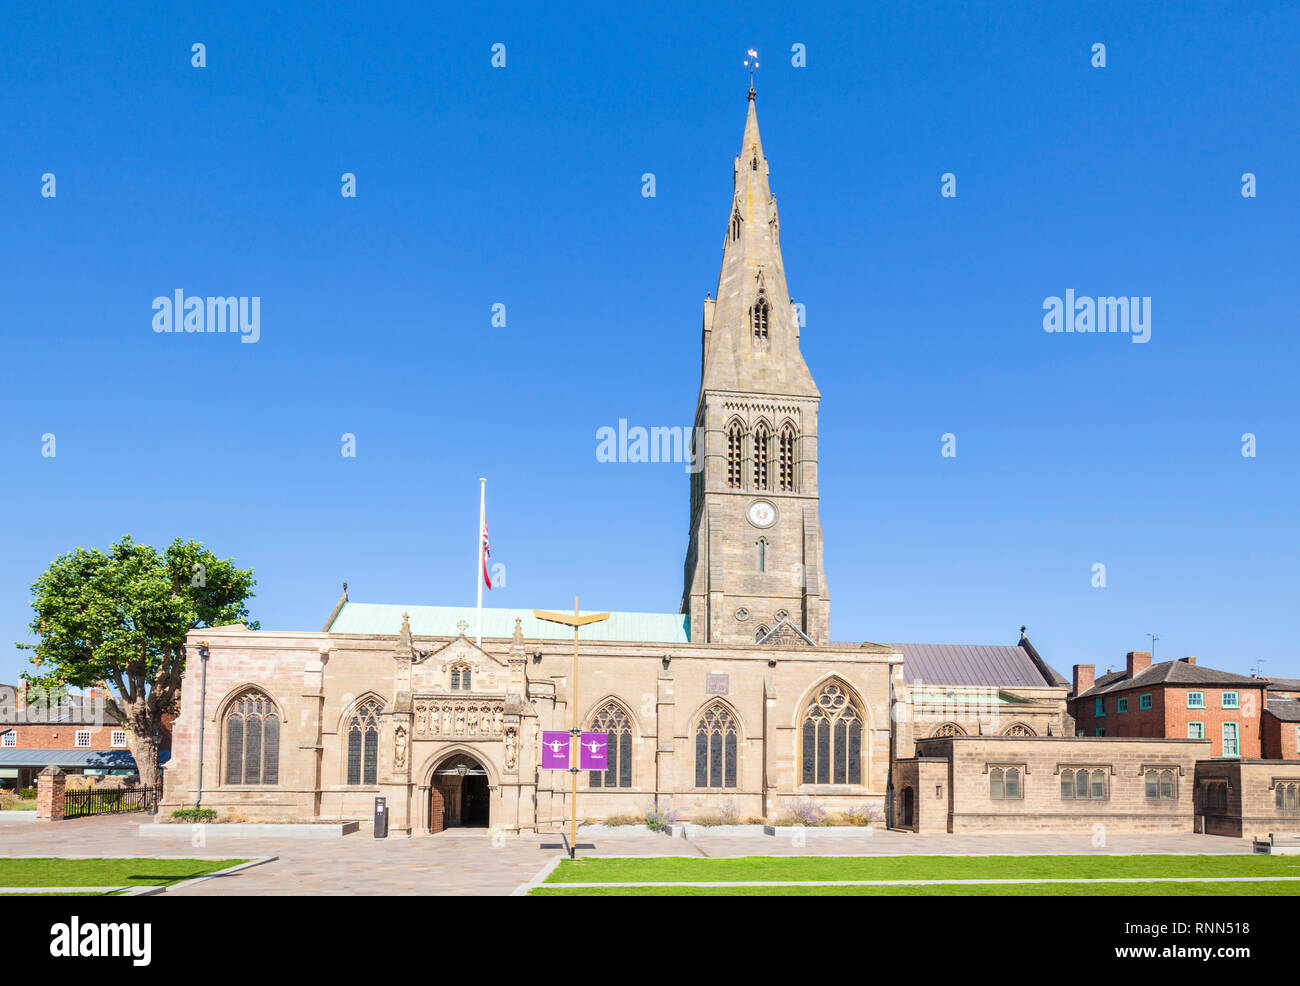 Cattedrale di Leicester luogo di sepoltura del re Richard III Leicester city centre Leicestershire England Regno Unito GB Europa Foto Stock